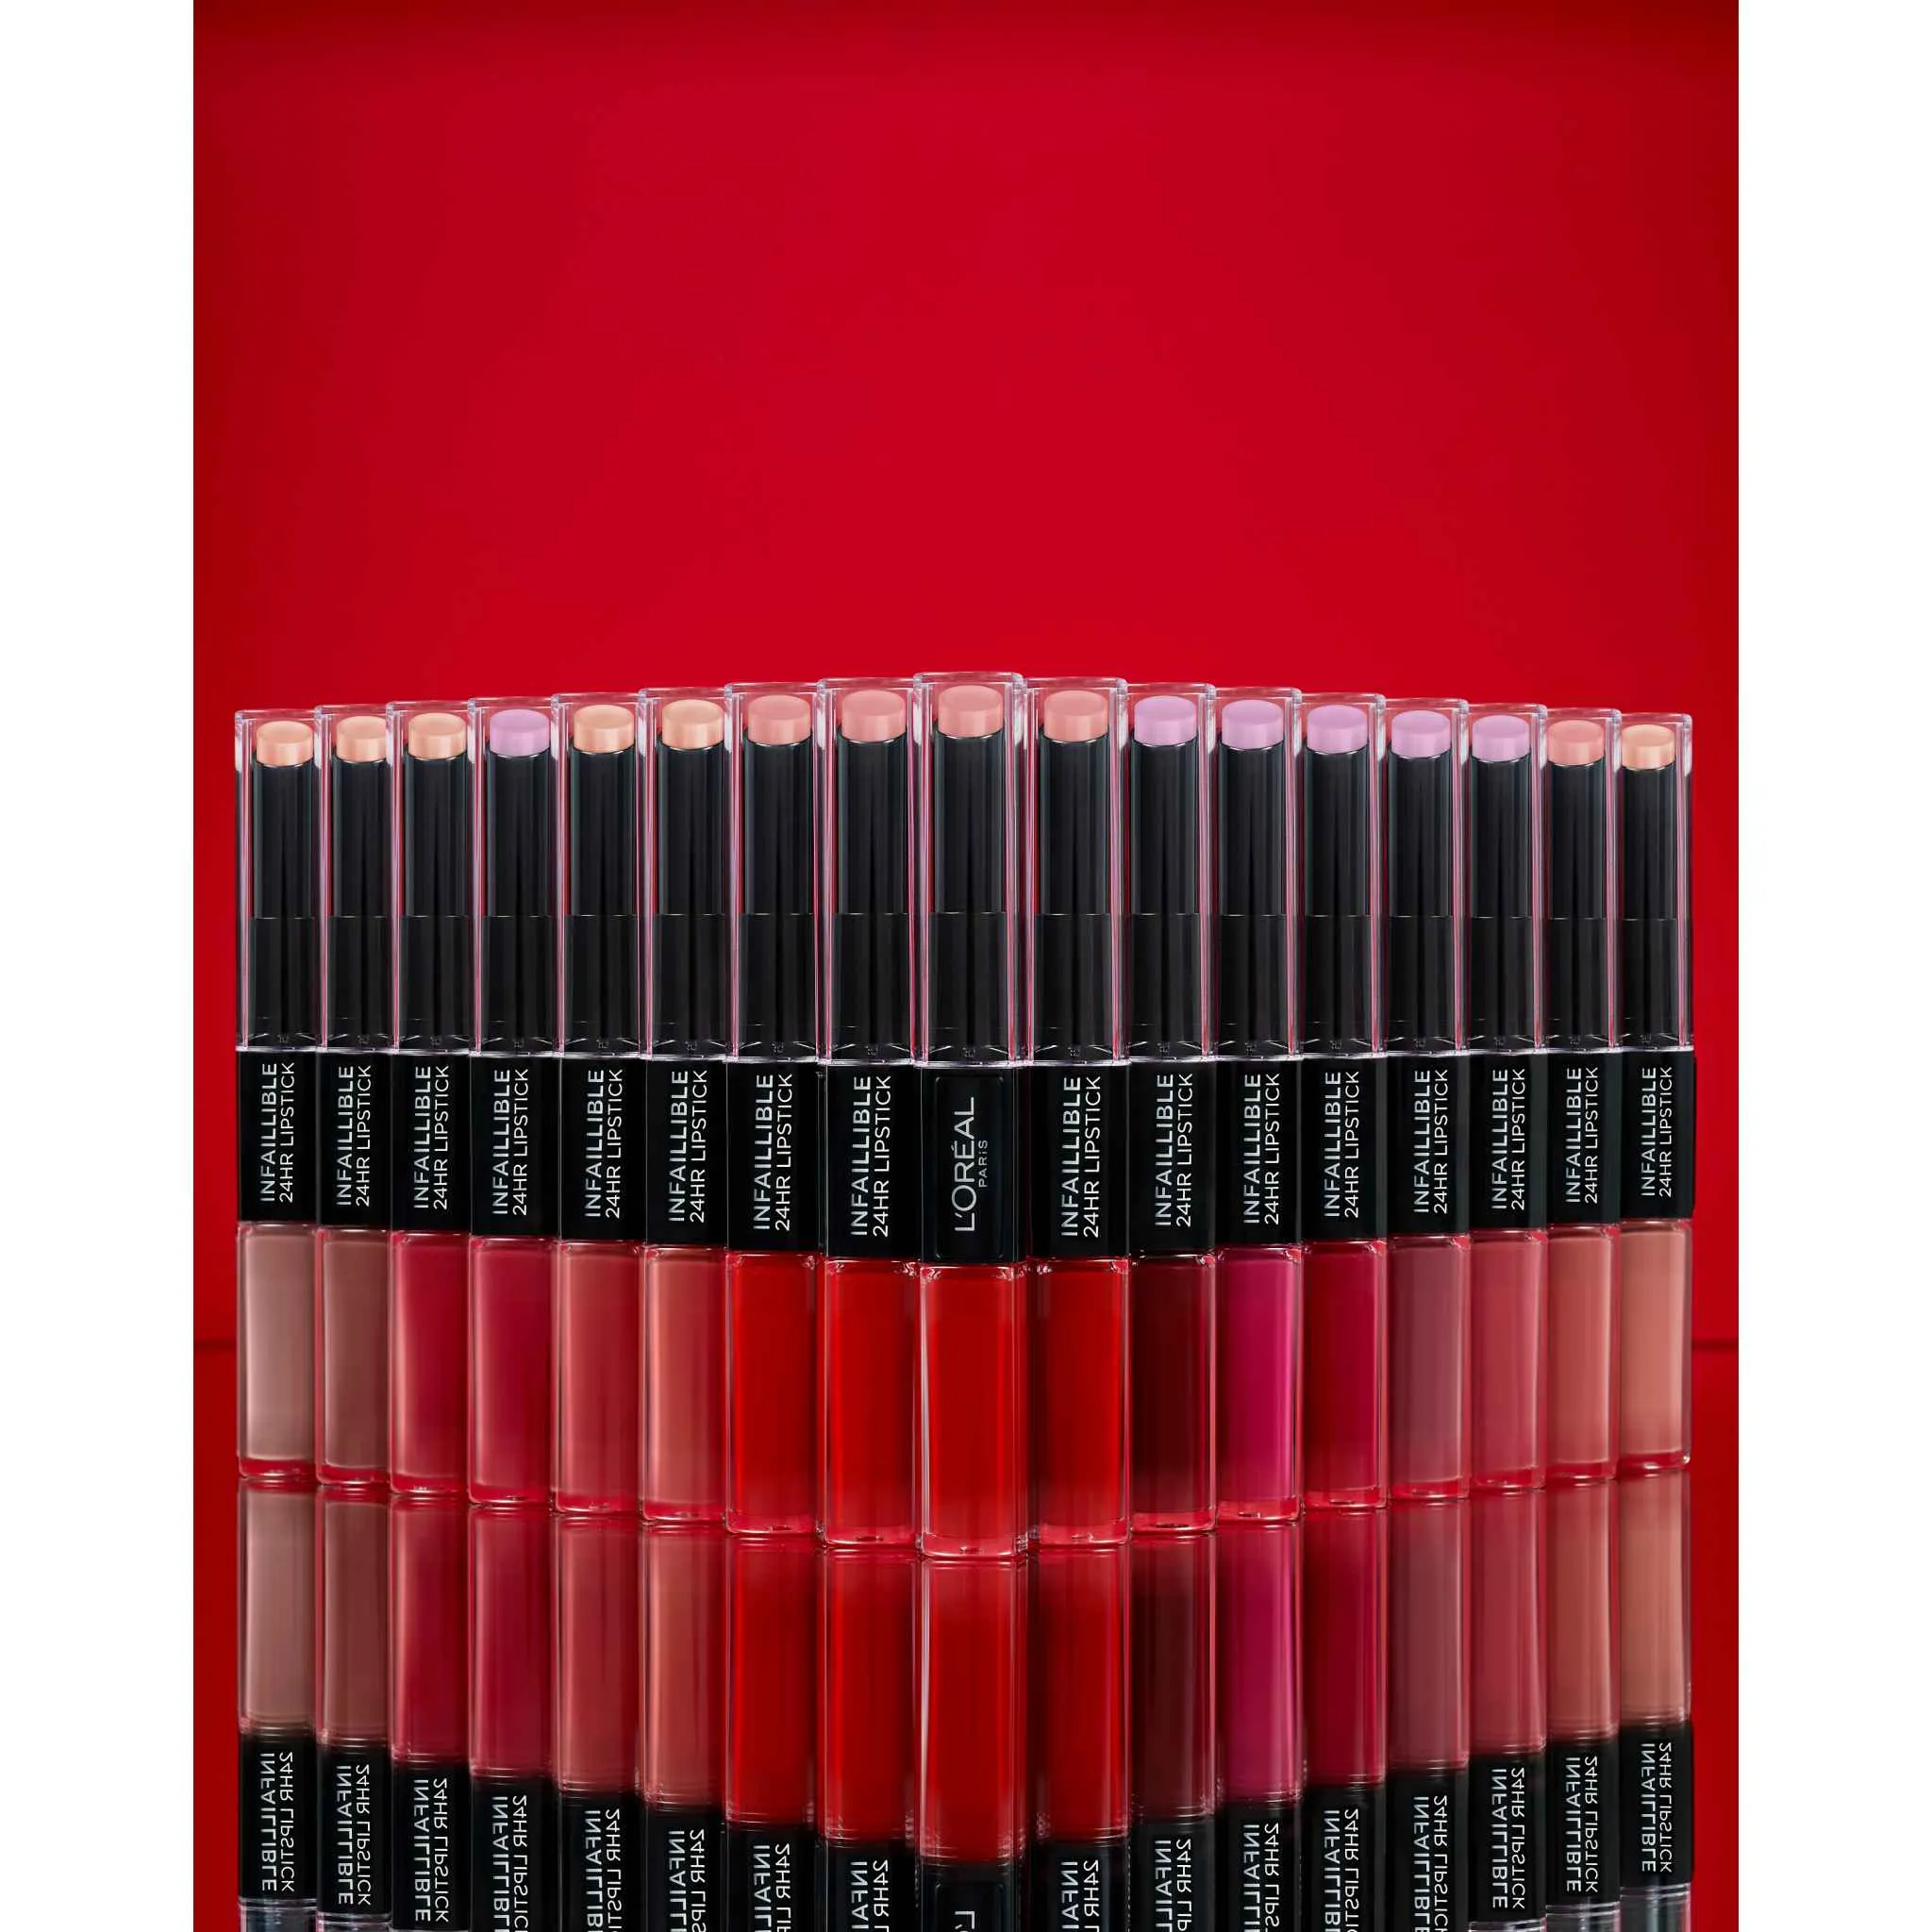 L´Oréal Paris Infaillible 24H Lip Color 804 Metroproof Rose rúž, 5,7 g 1×5,7 g, rúž